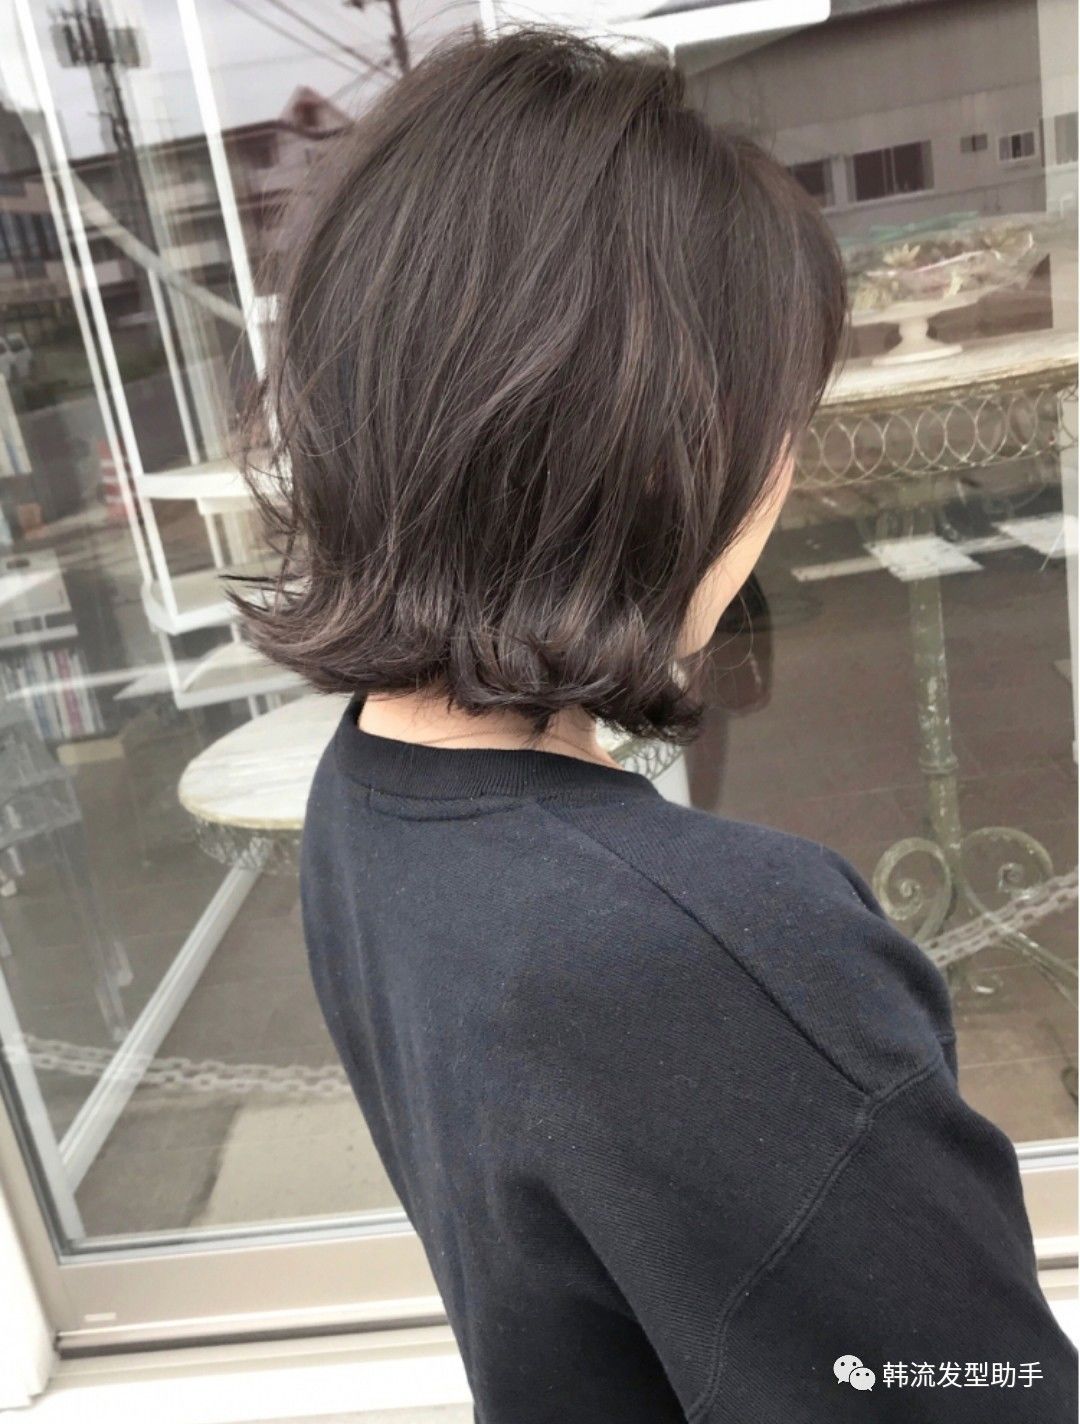 吹头发的时候可以直接用卷发棒卷发尾位置的卷度打理韩国最新潮流发型